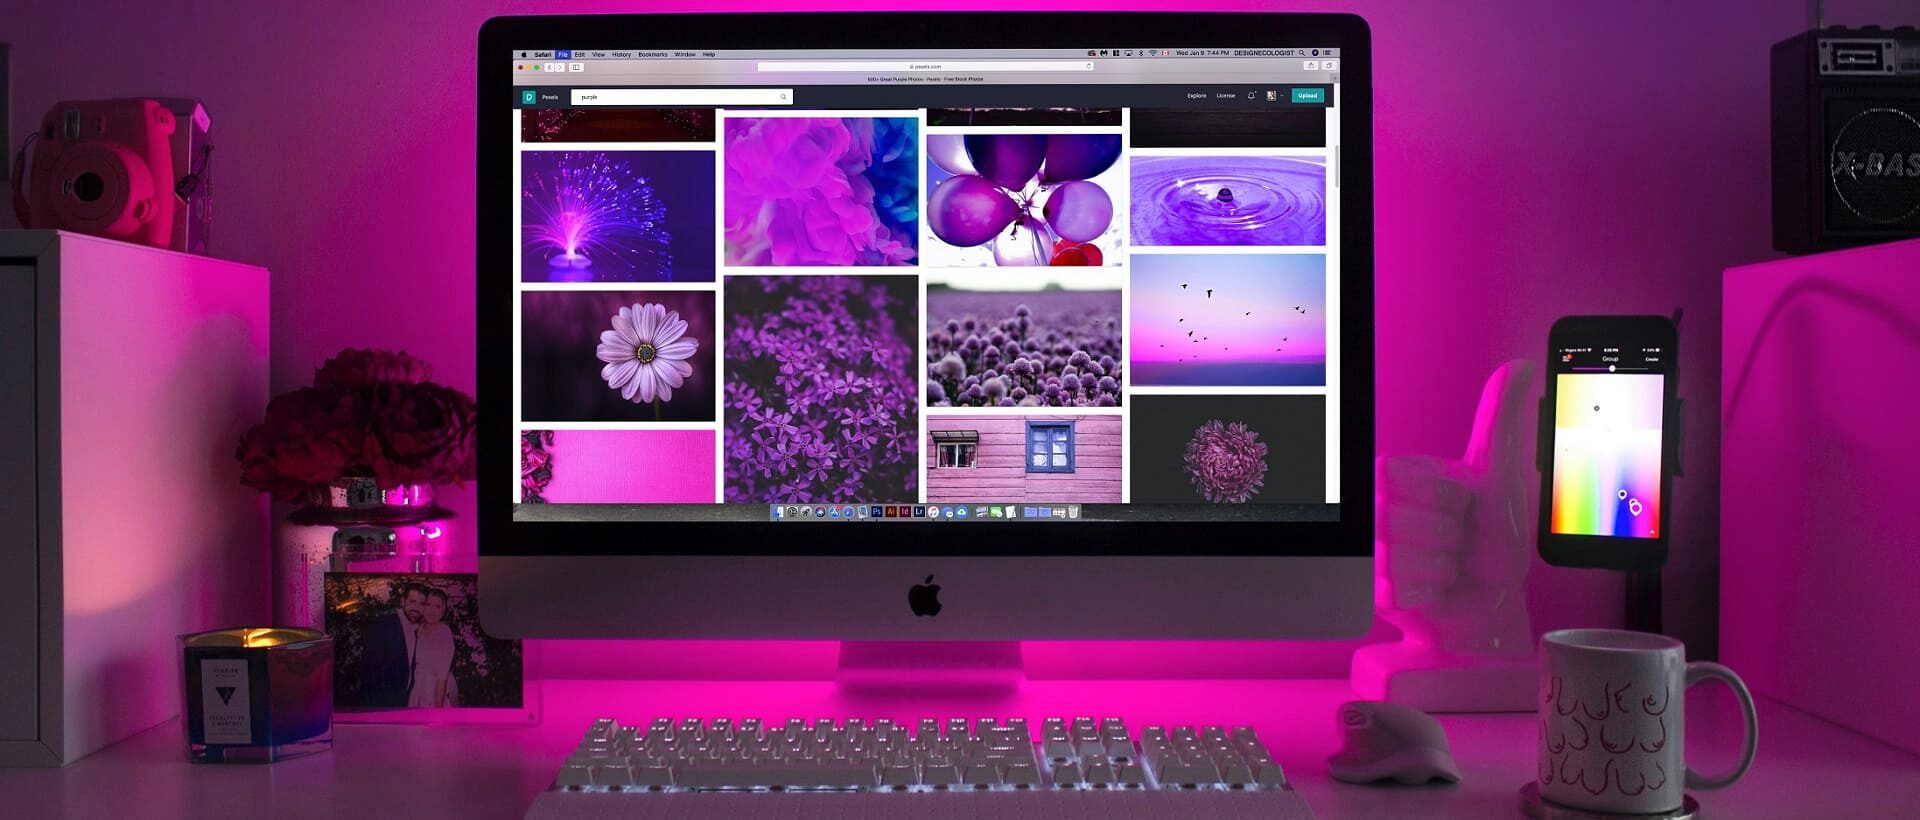 Arbeitsplatz violett beleuchtet mit Bildern auf Bildschirm sinnbildlich für Gestaltungsregeln bei Werbemitteln und Websites